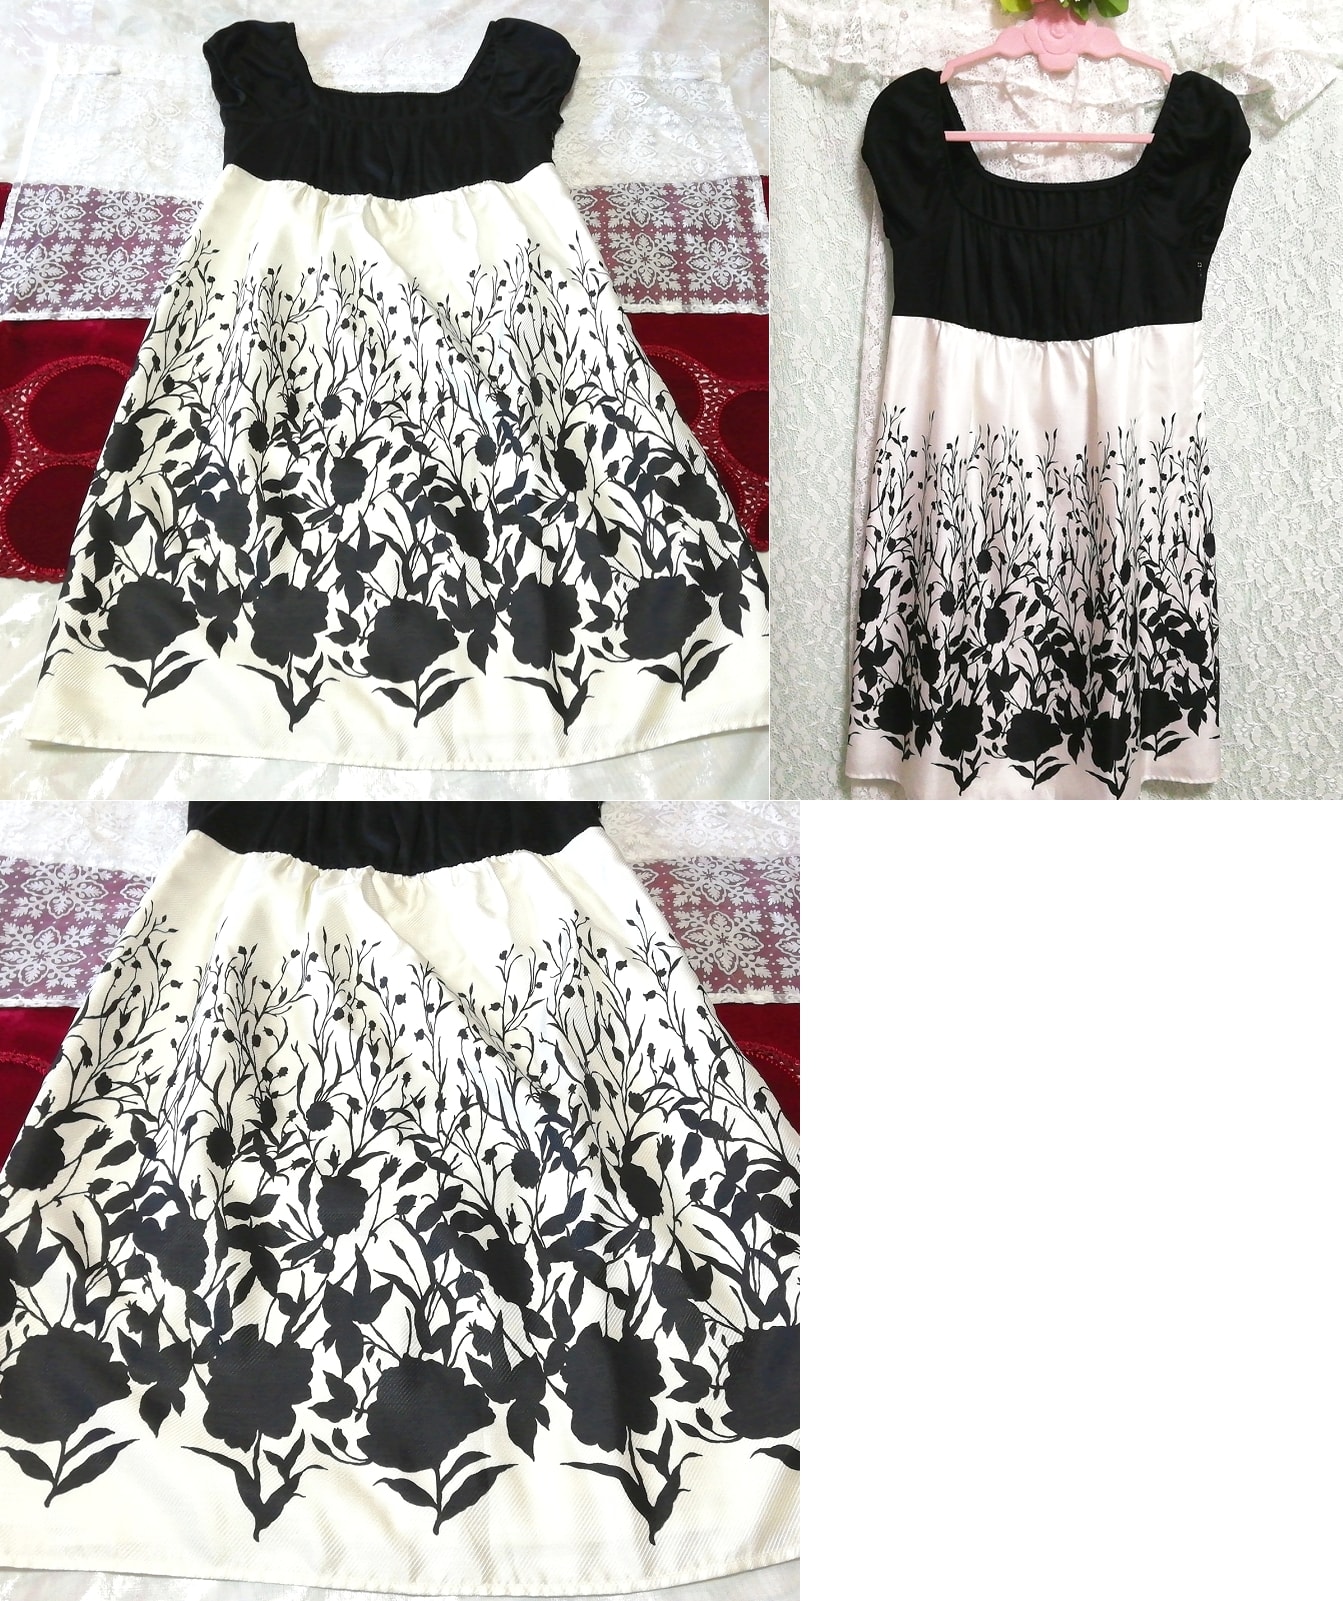 흑백 컷아웃 패턴 민소매 튜닉 네글리제 나이트가운 나이트웨어 드레스, 튜닉, 소매 없는, 소매 없는, m 사이즈